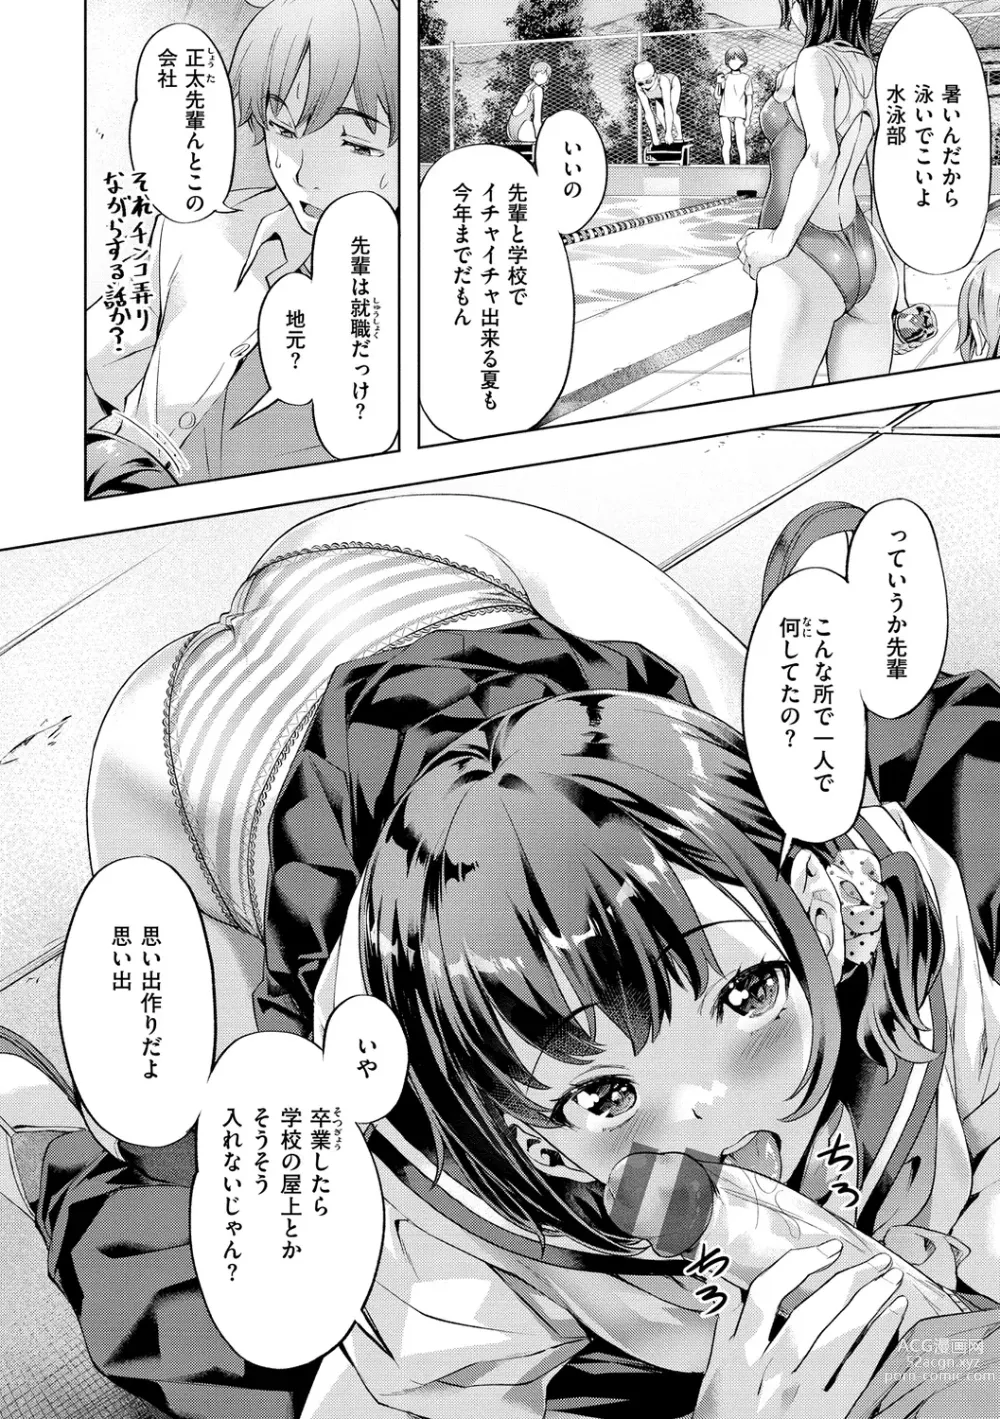 Page 6 of manga Binetsu Emotion - Sensual Emotion